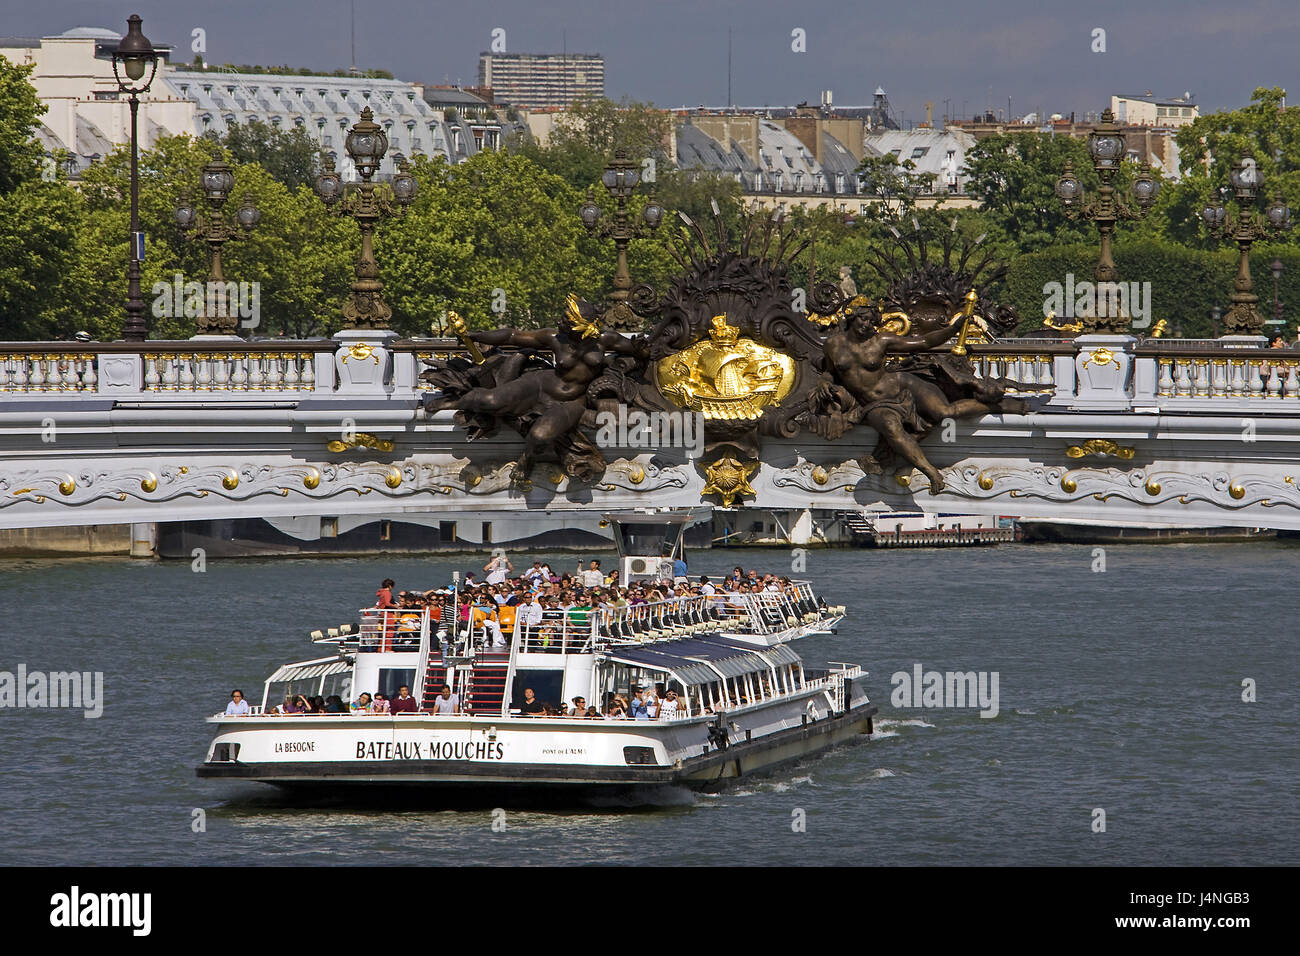 France, Paris, flux his, Pont Alexandre III, tourist boot, Stock Photo